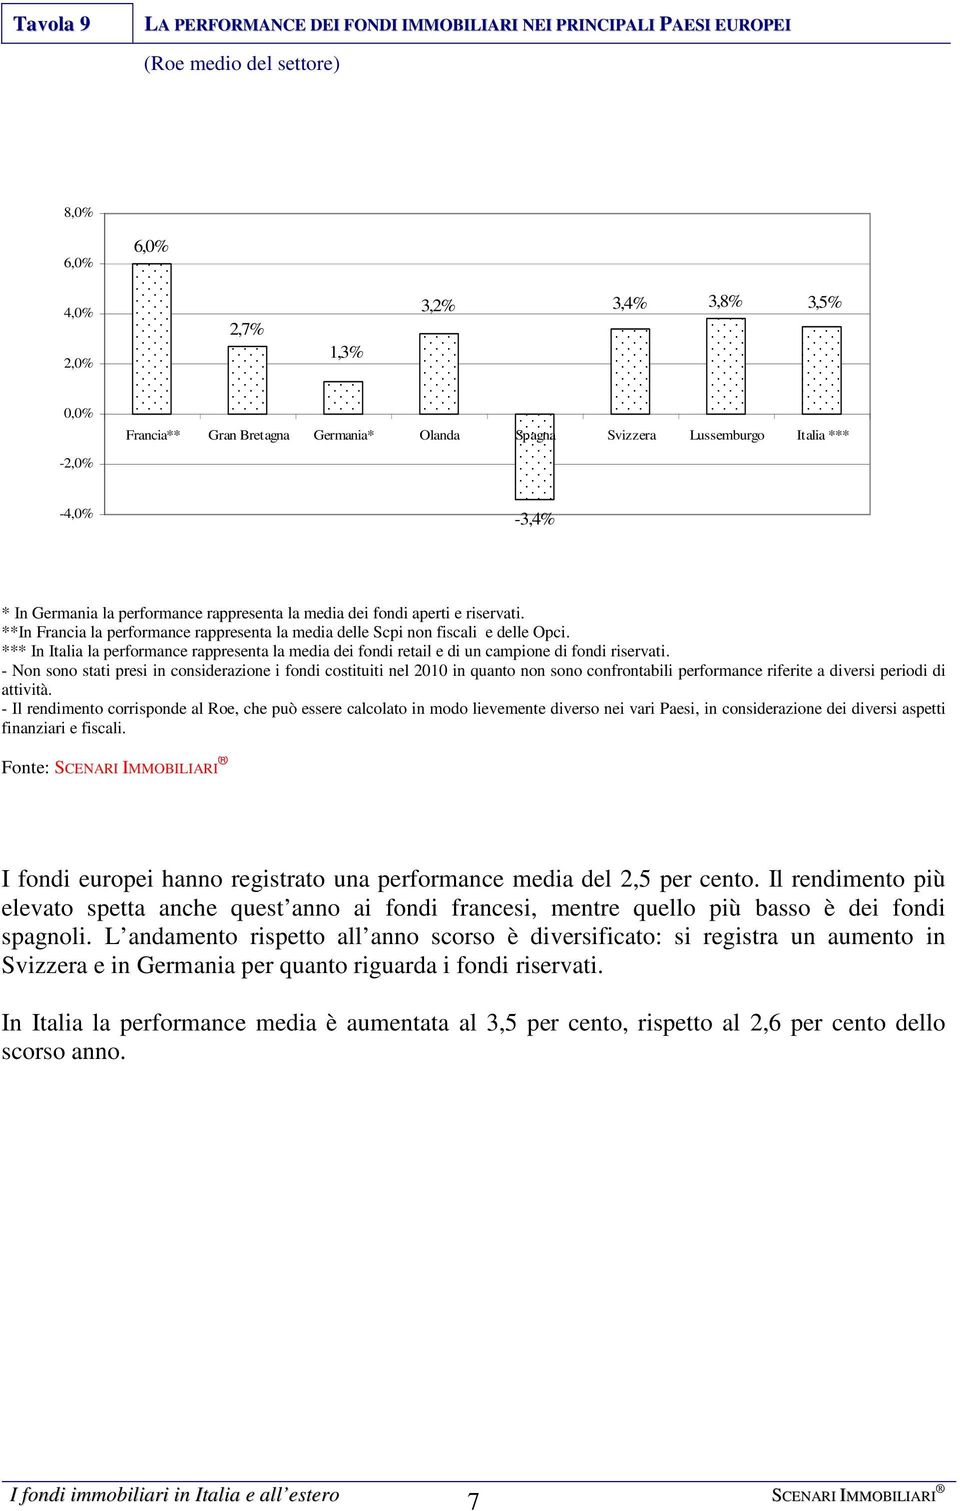 **In Francia la performance rappresenta la media delle Scpi non fiscali e delle Opci. *** In Italia la performance rappresenta la media dei fondi retail e di un campione di fondi riservati.